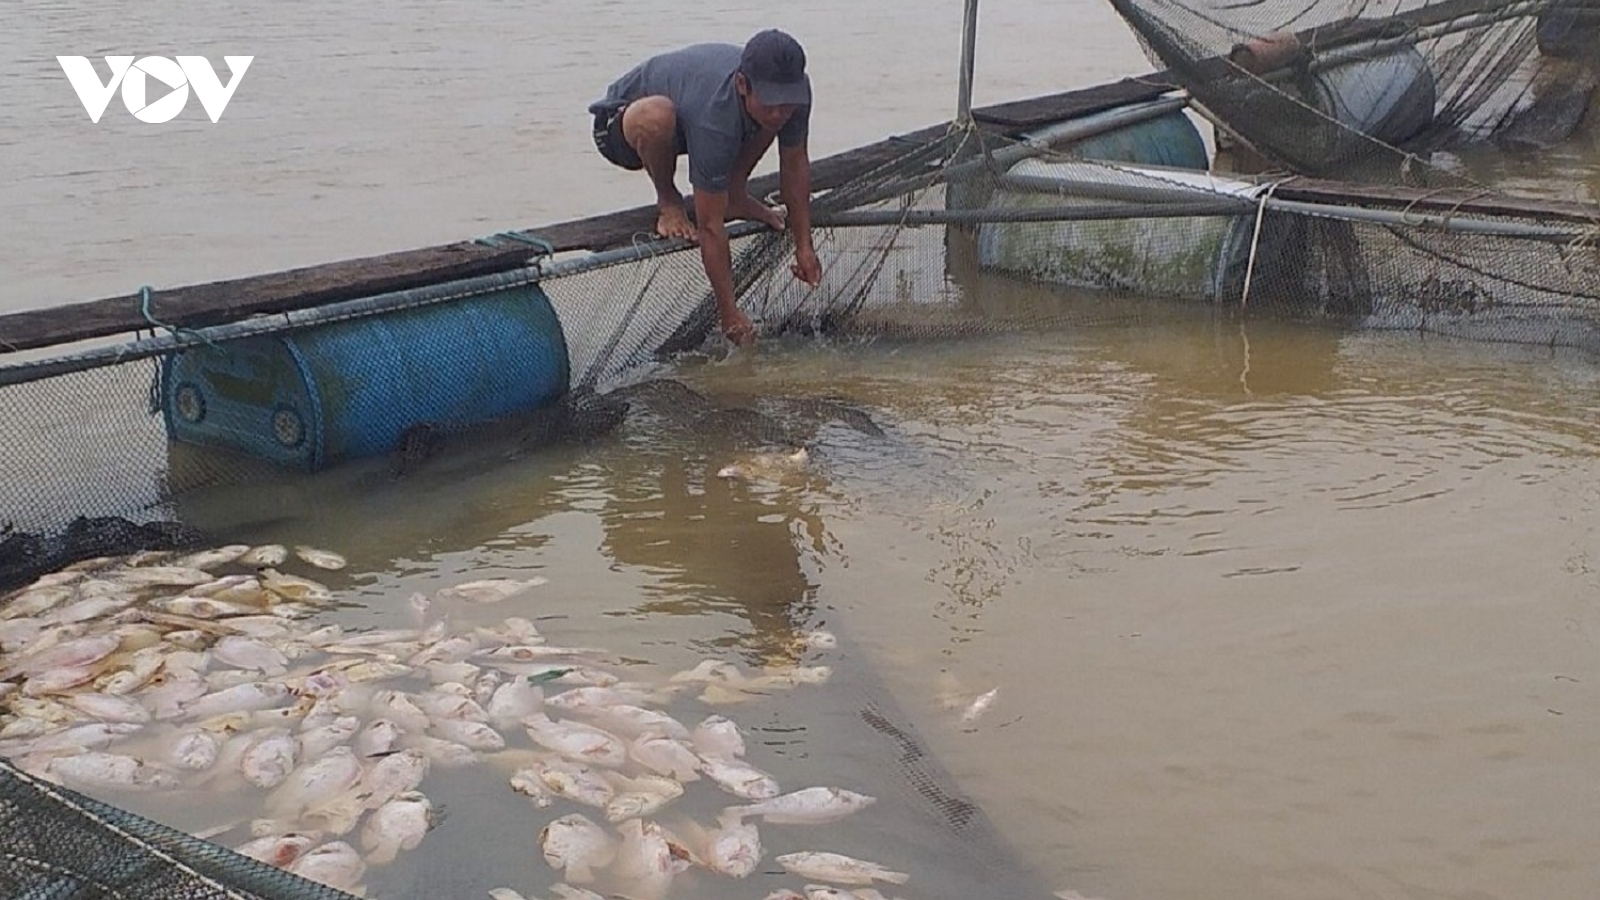 Cá nuôi lồng chết hàng loạt, người dân Thừa Thiên Huế thiệt hại nặng nề